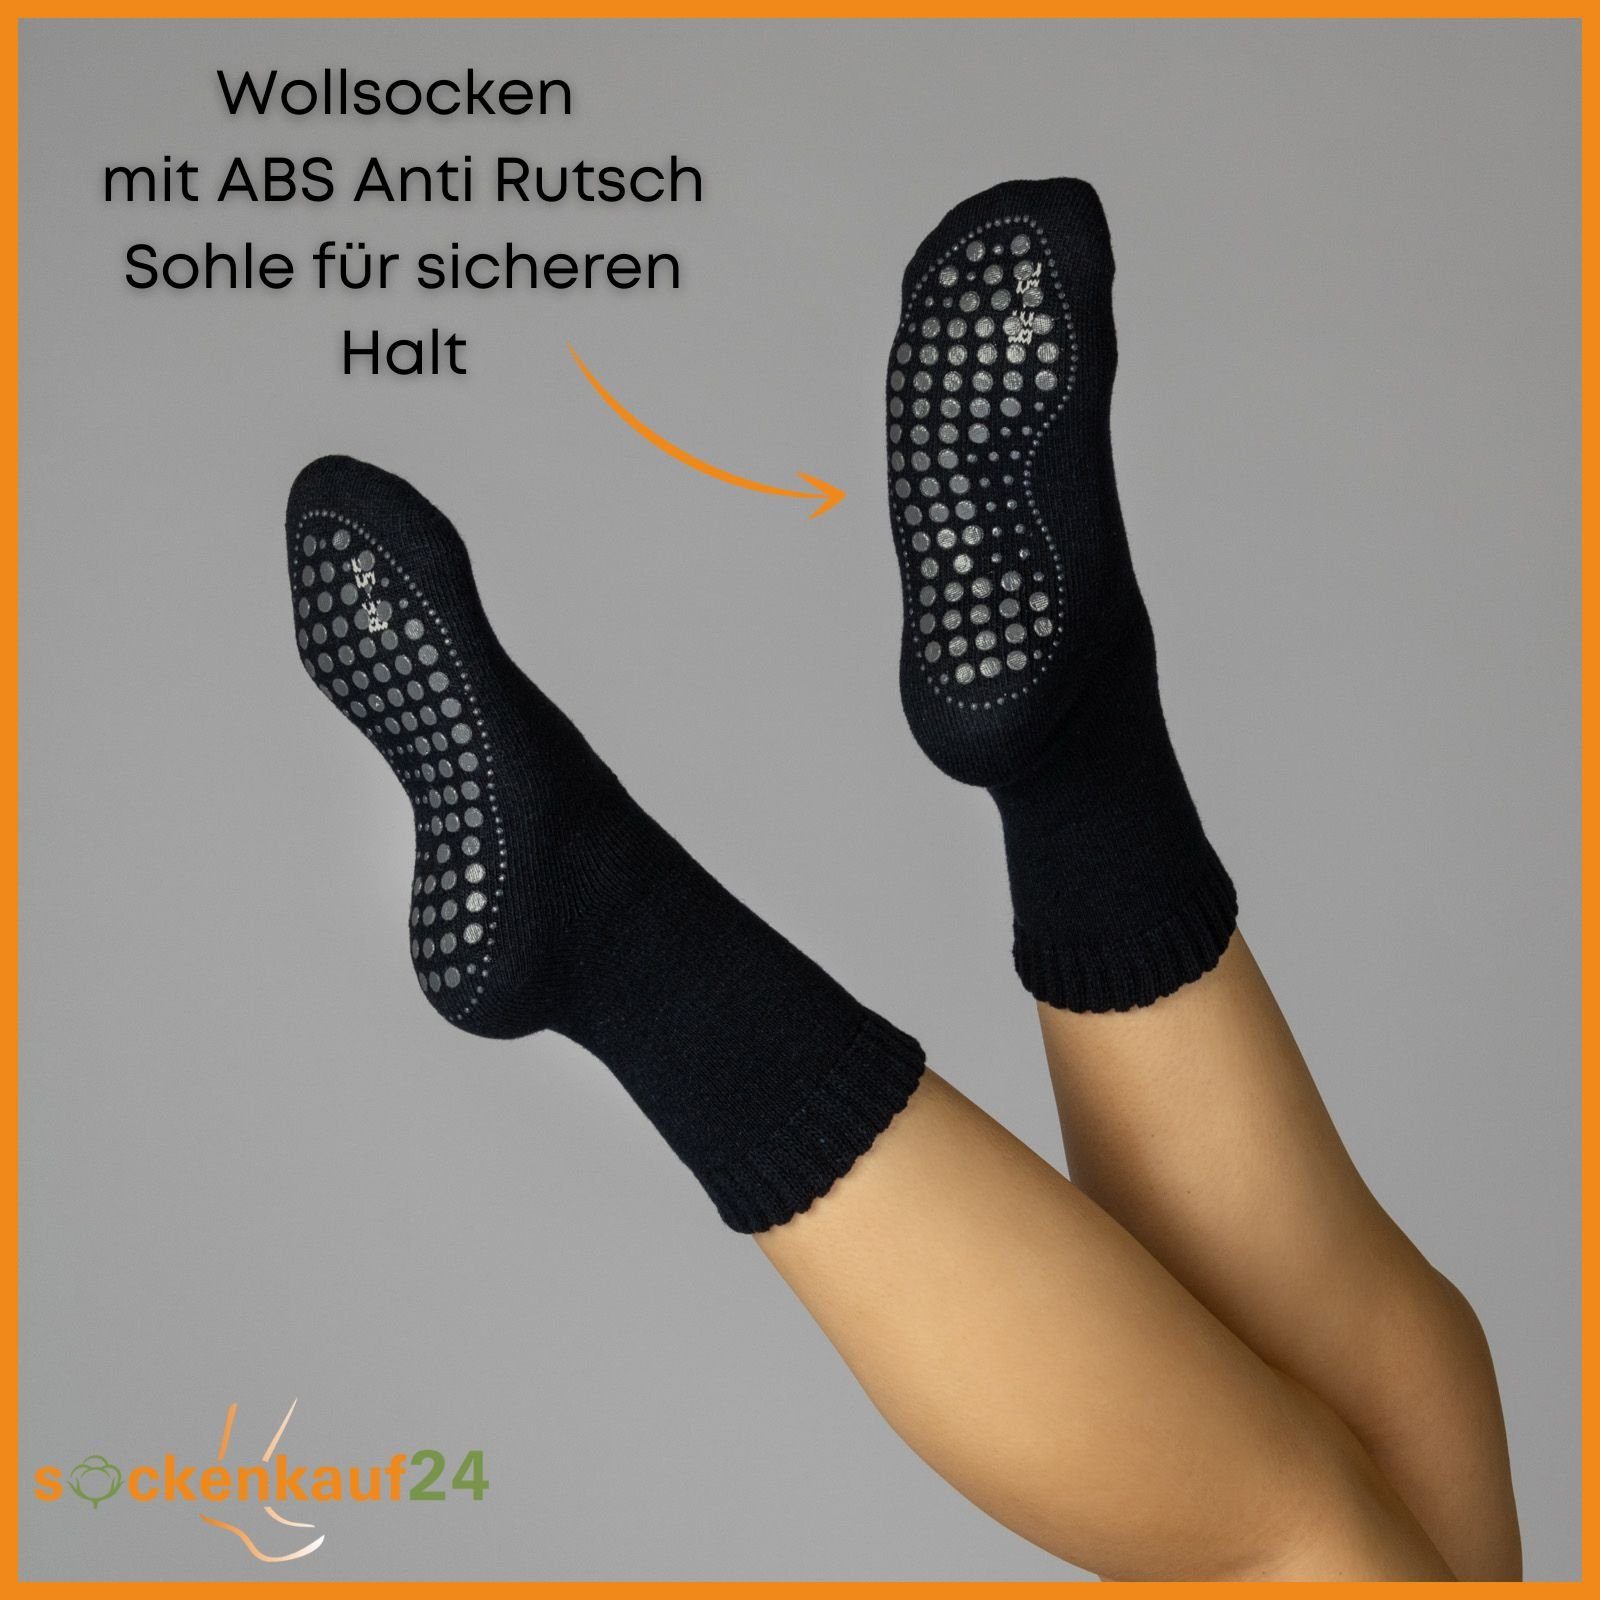 sockenkauf24 ABS-Socken 2, 4 - Rutsch oder Paar Socken ABS 6 Socken mit & WP Damen (Navy, Anti 2-Paar, 43-46) 21463 Wolle Herren